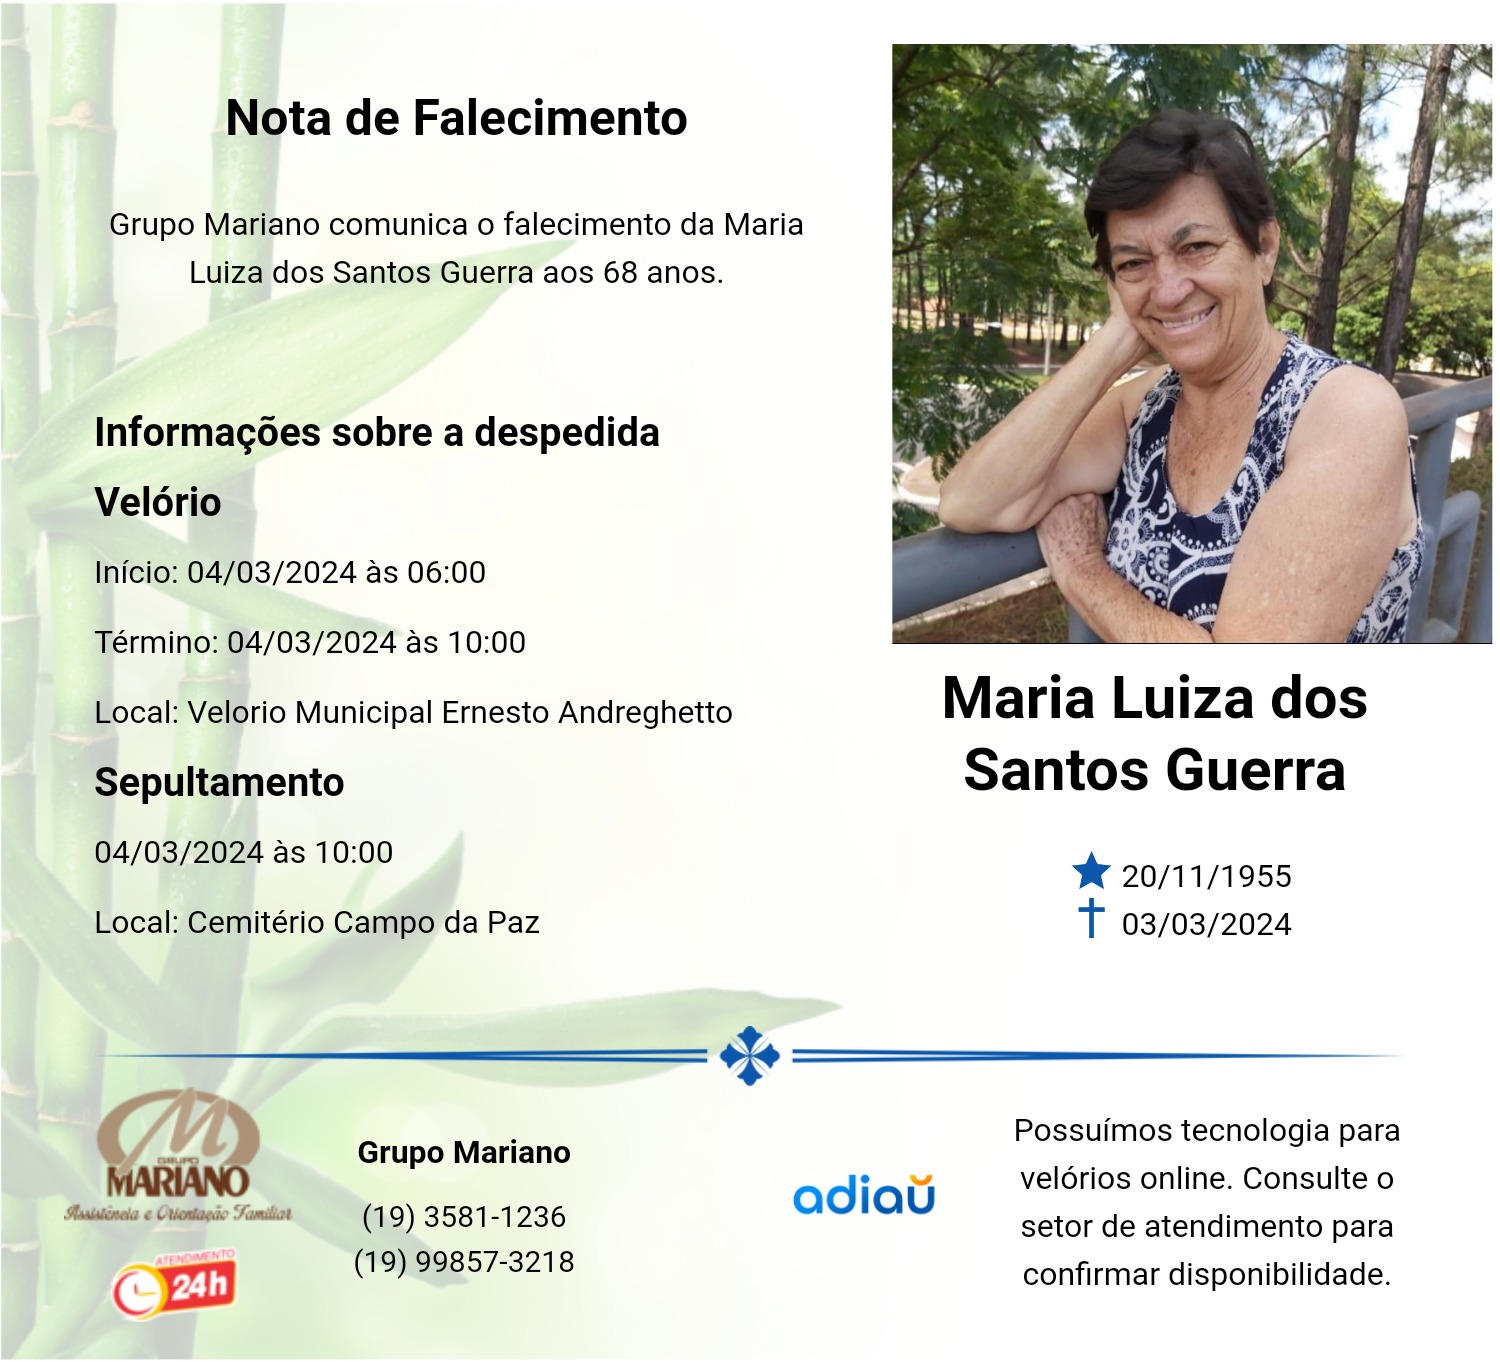 Maria Luiza dos Santos Guerra